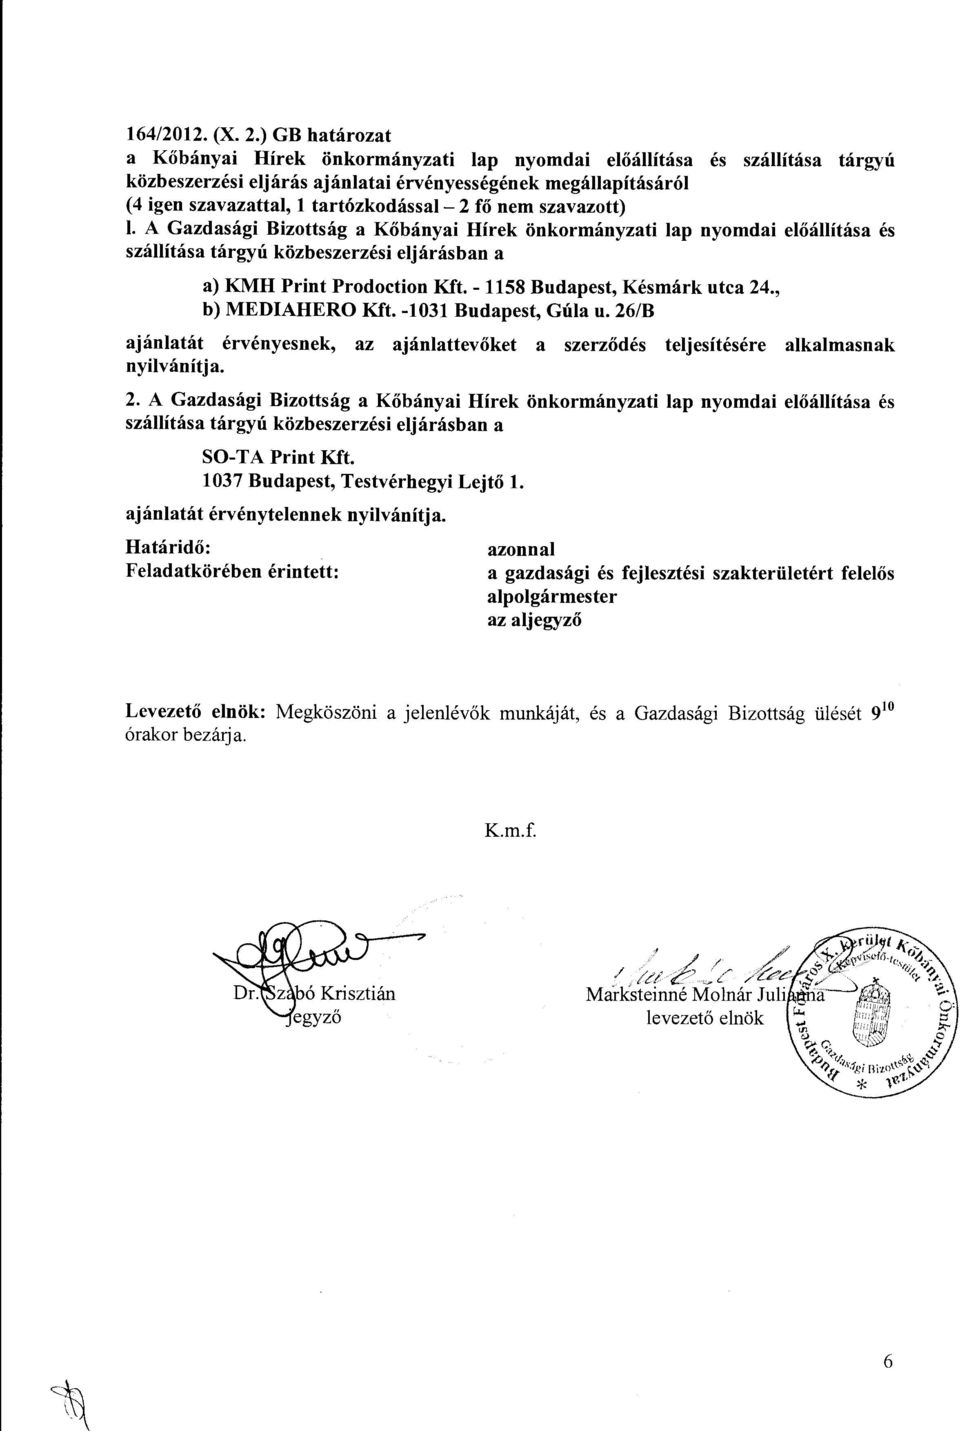 nem szavazott) l. A Gazdasági Bizottság a Kőbányai Hírek önkormányzati lap nyomdai előállítása és szállítása tárgyú közbeszerzési eljárásban a a) KMH Print Prodoction Kft.